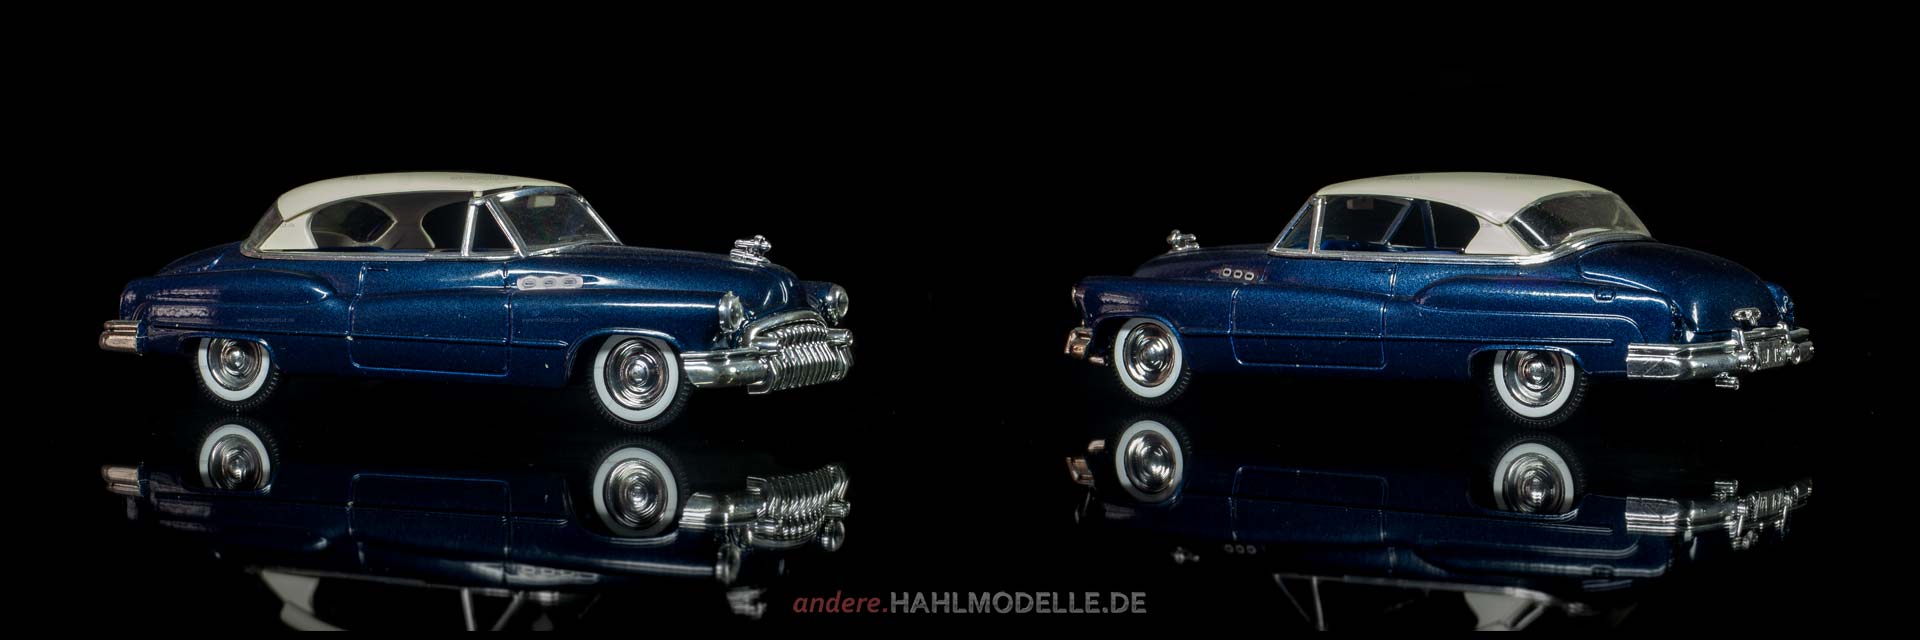 Buick Serie 50 Super Riviera Hardtop Coupé | Coupé | Solido | 1:43 | www.andere.hahlmodelle.de